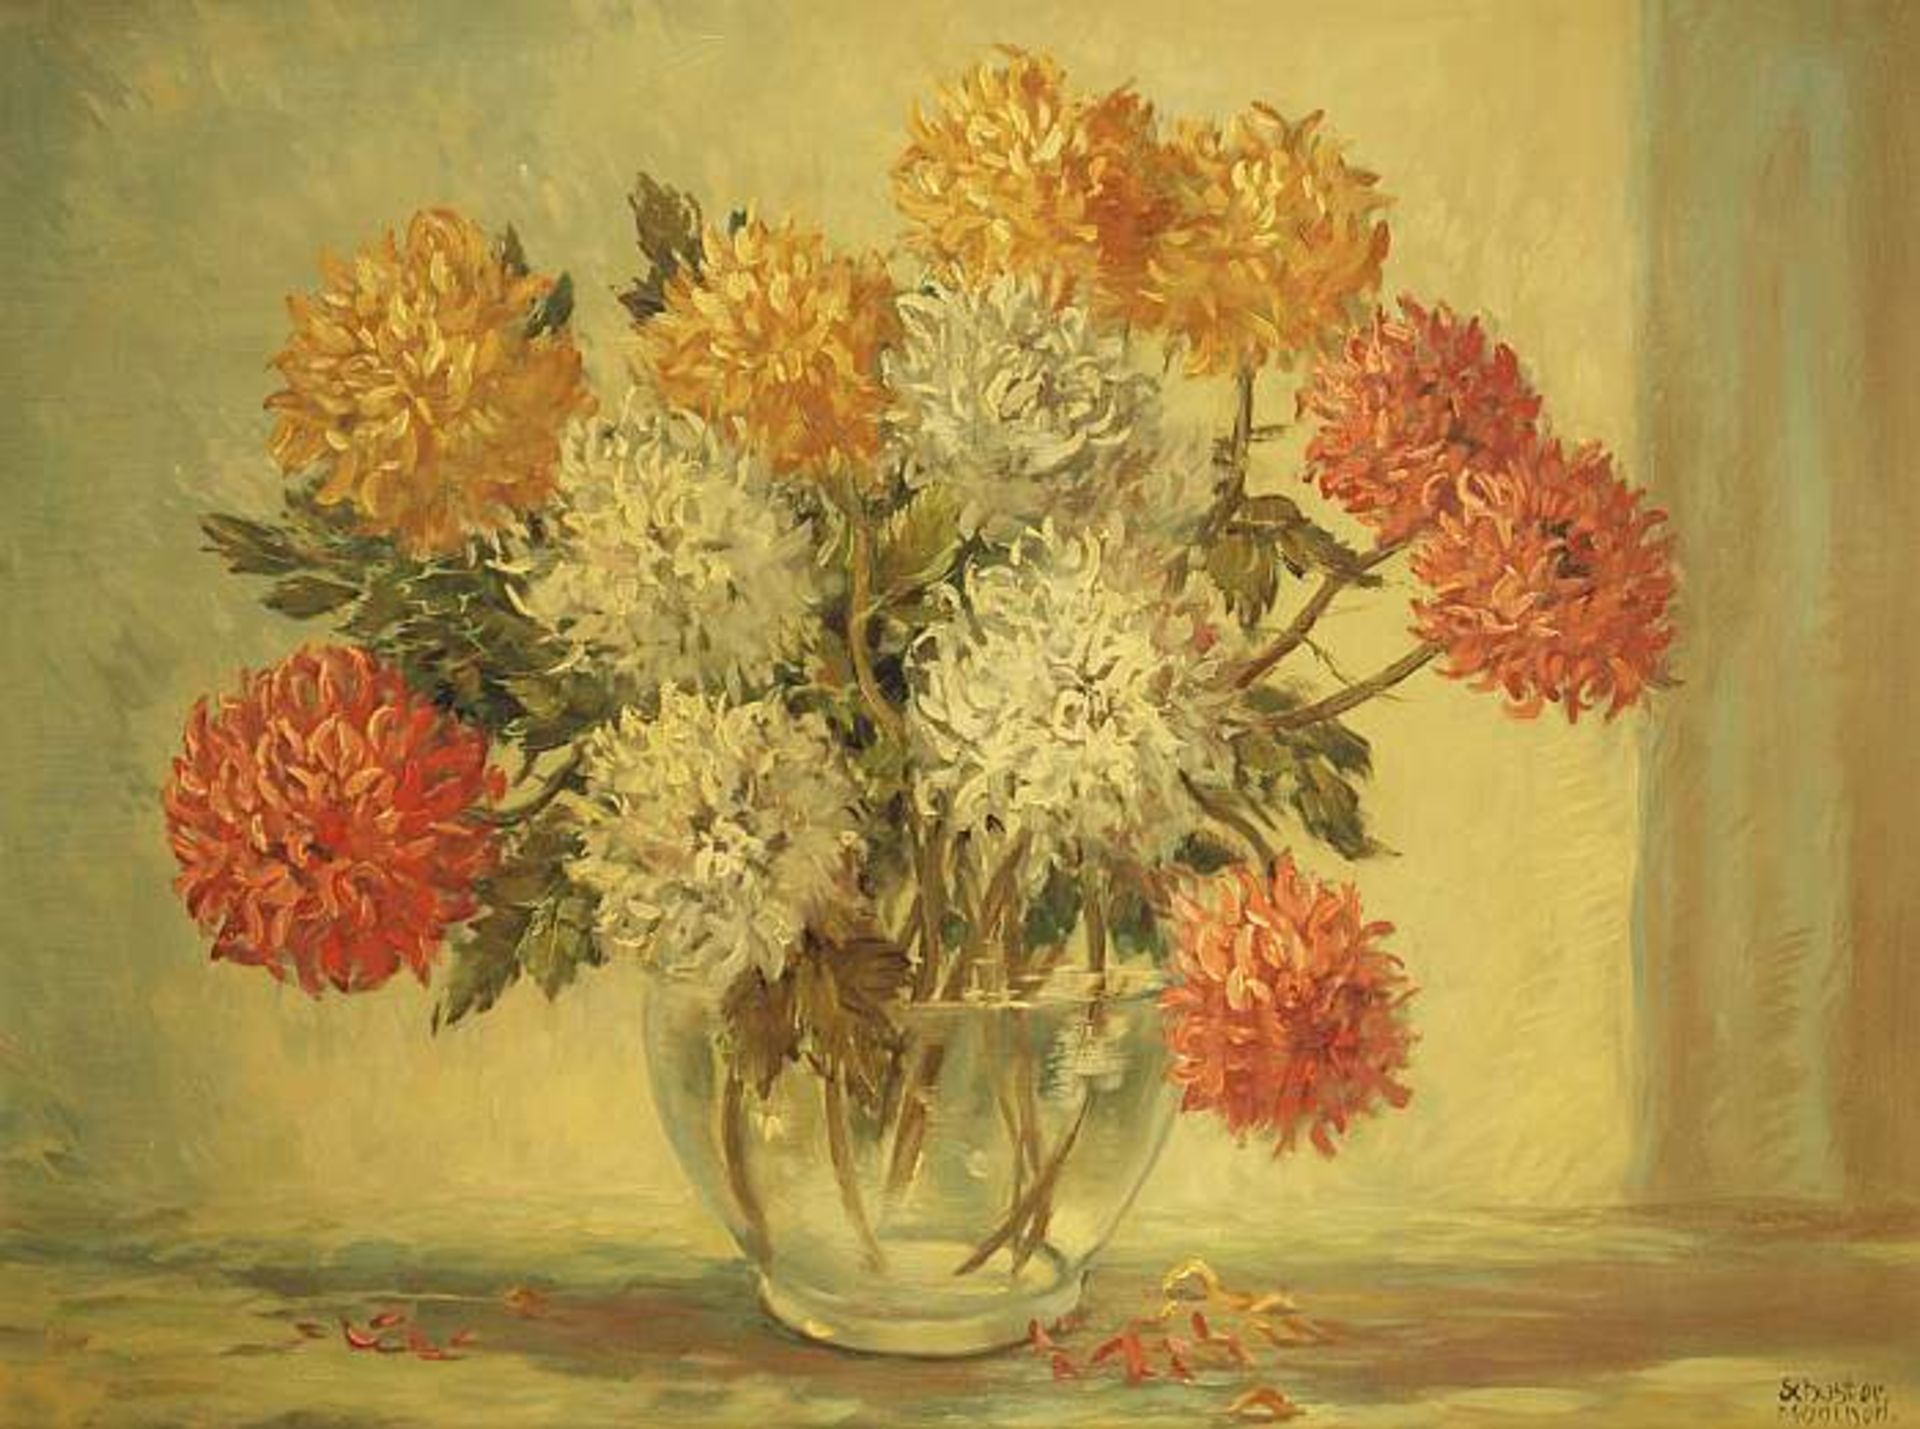 SCHUSTER SCHUSTER. 20. Jahrhundert. Stillleben mit Chrysanthemen in Glasvase. Öl auf